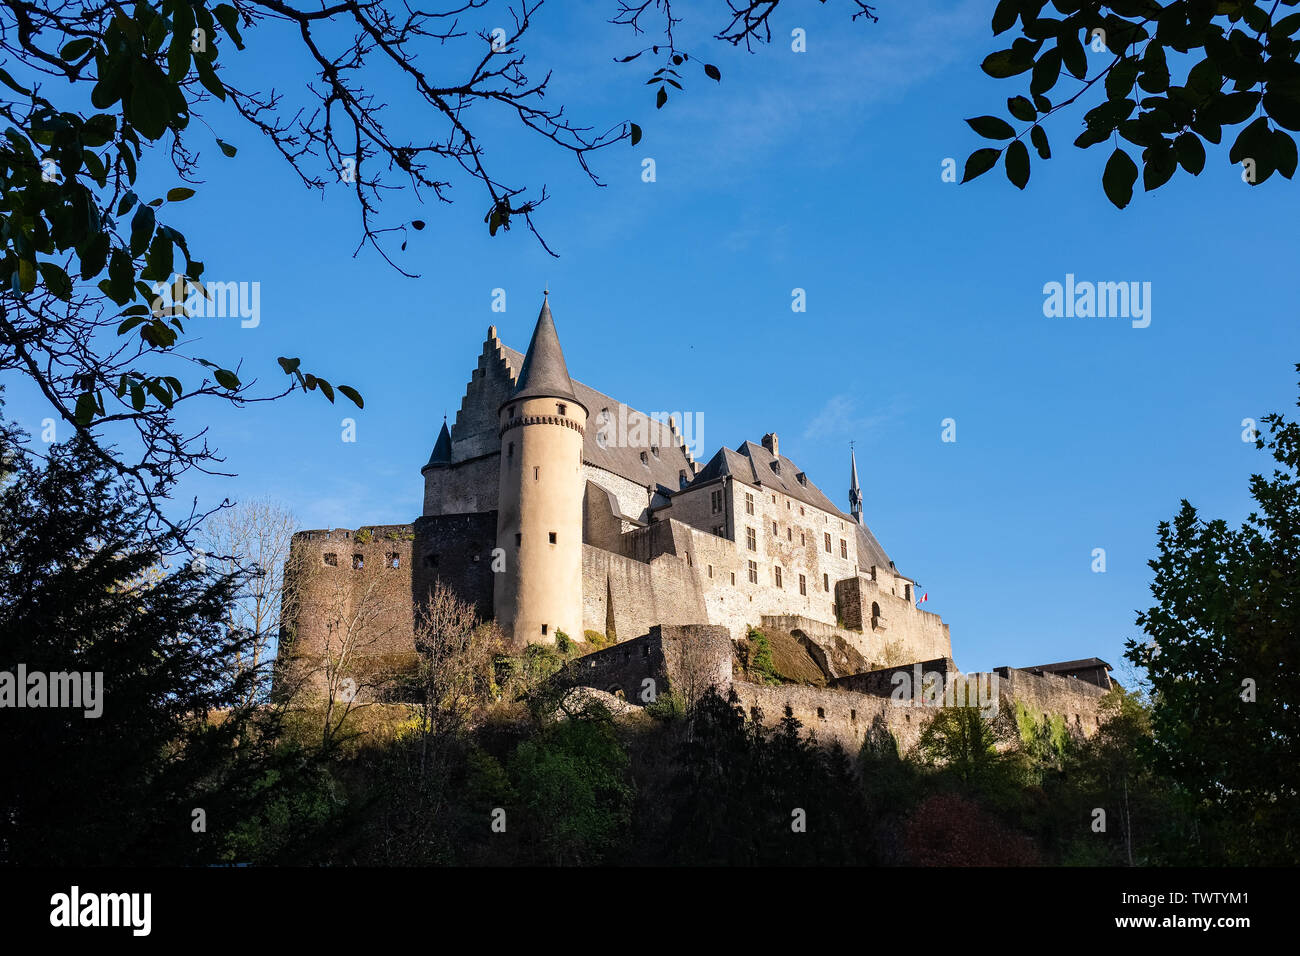 Le magnifique château médiéval de Vianden. Luxembourg Banque D'Images